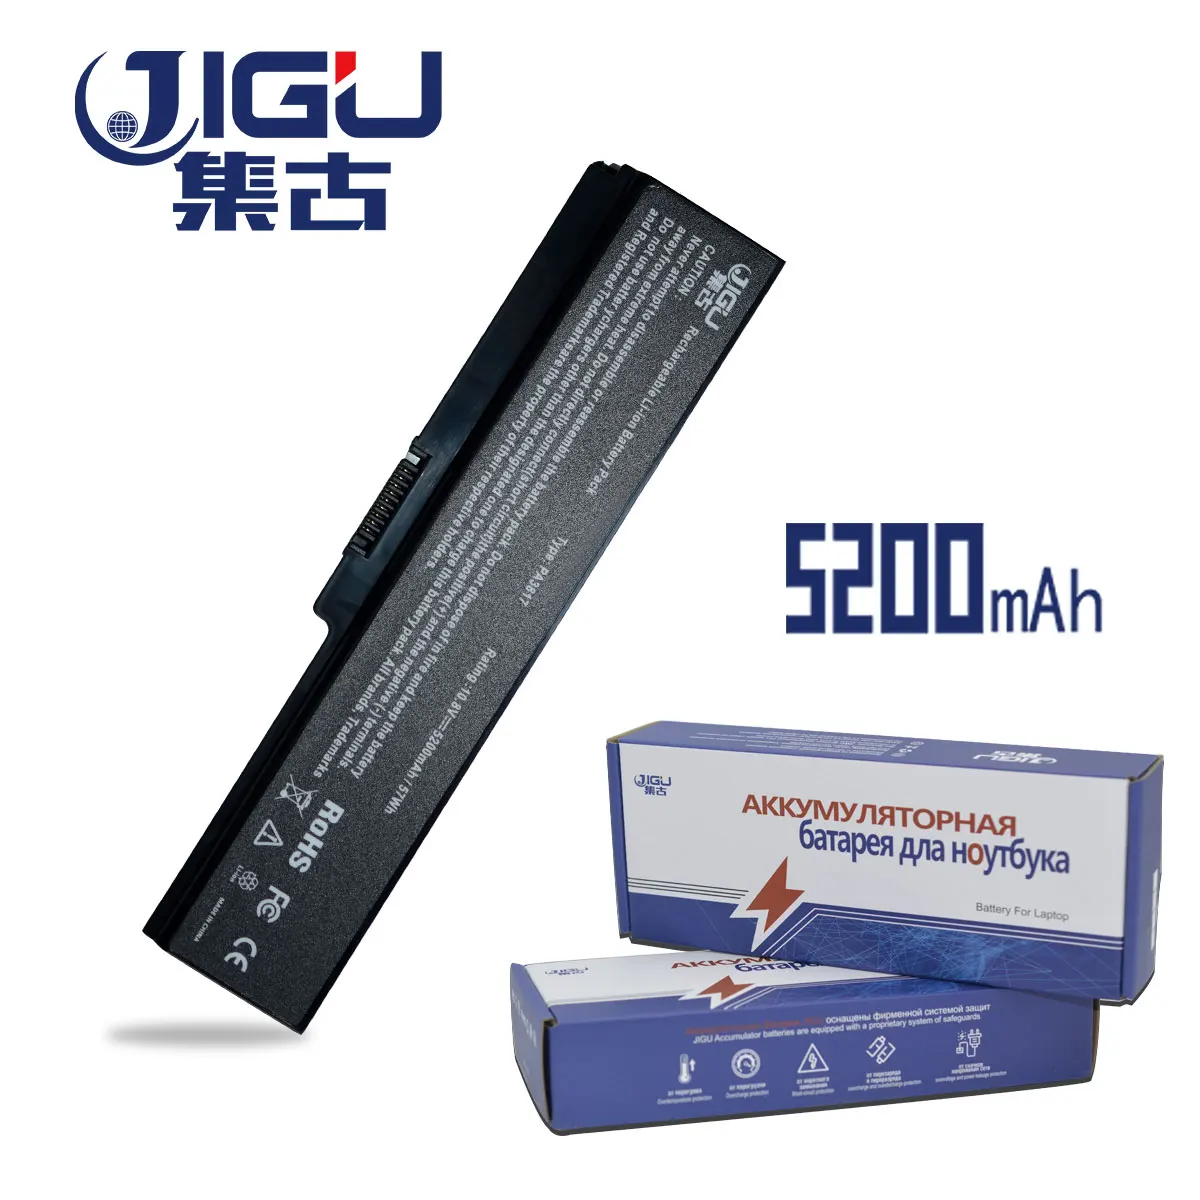 Аккумулятор JIGU для ноутбука Toshiba Satellite L700 L700D L730 L735 L740 L745 L745D L750 L750D L755 L755D L770 L770D L775 - Фото №1